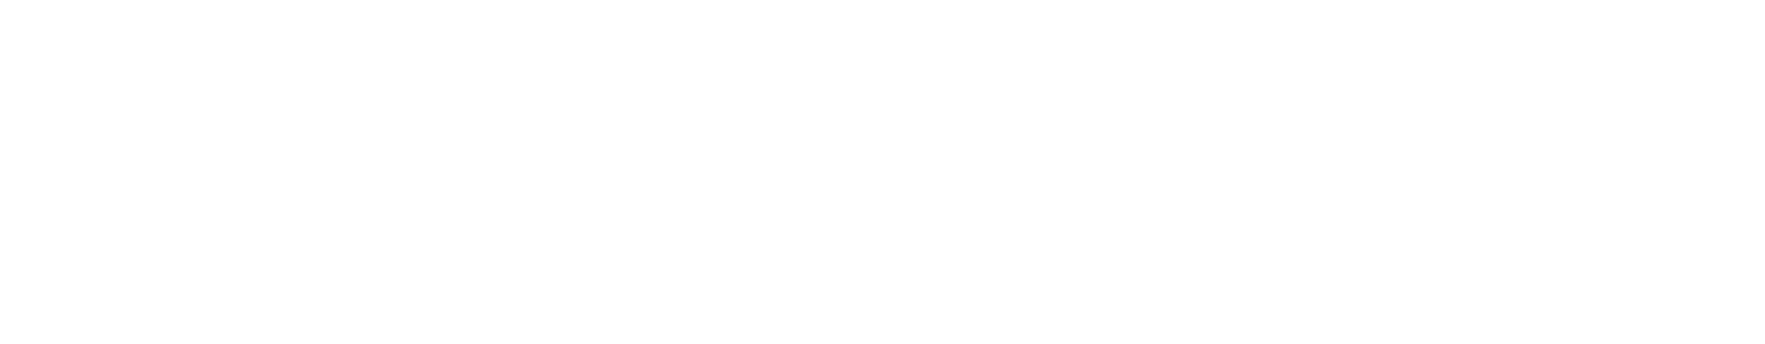 وزارة البيئة والتغير المناخي